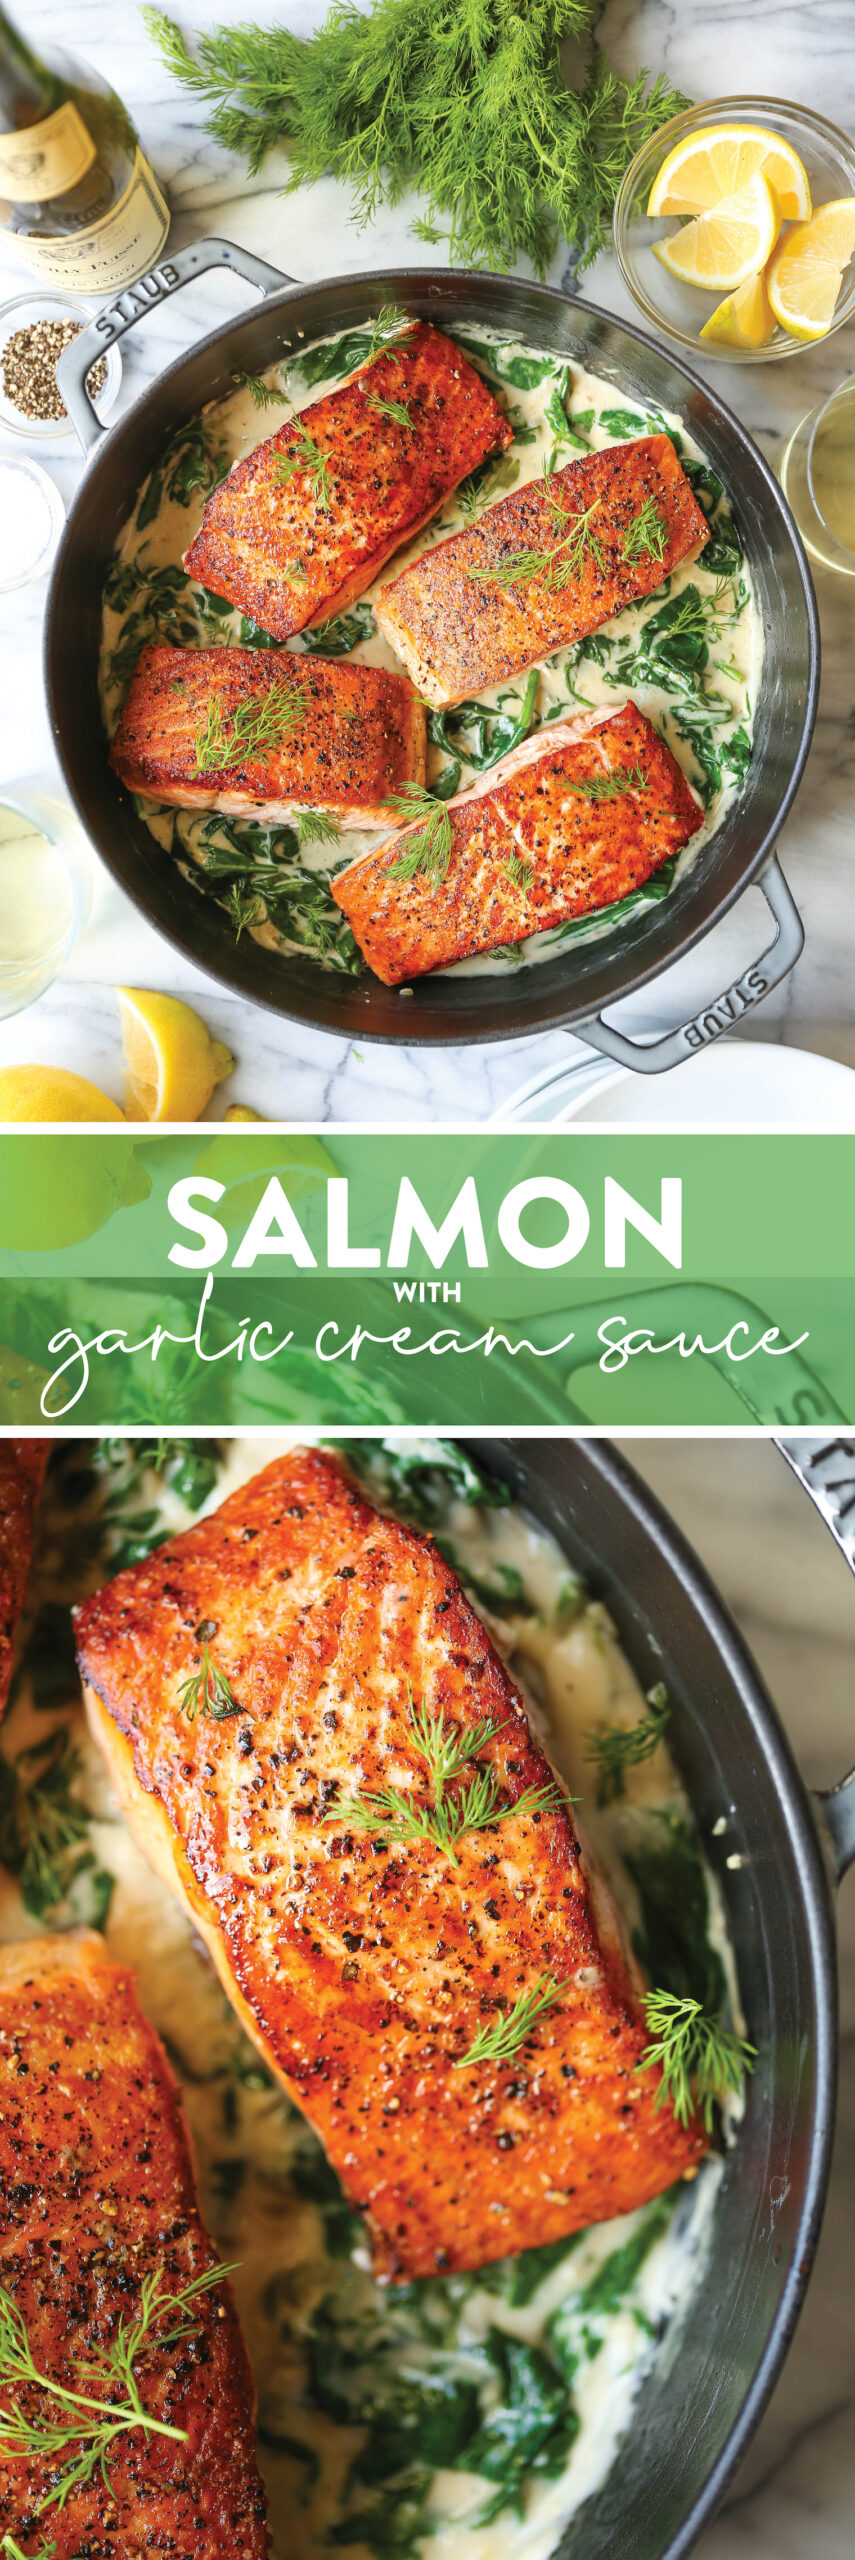 Salmon with Garlic Cream Sauce - Damn Delicious